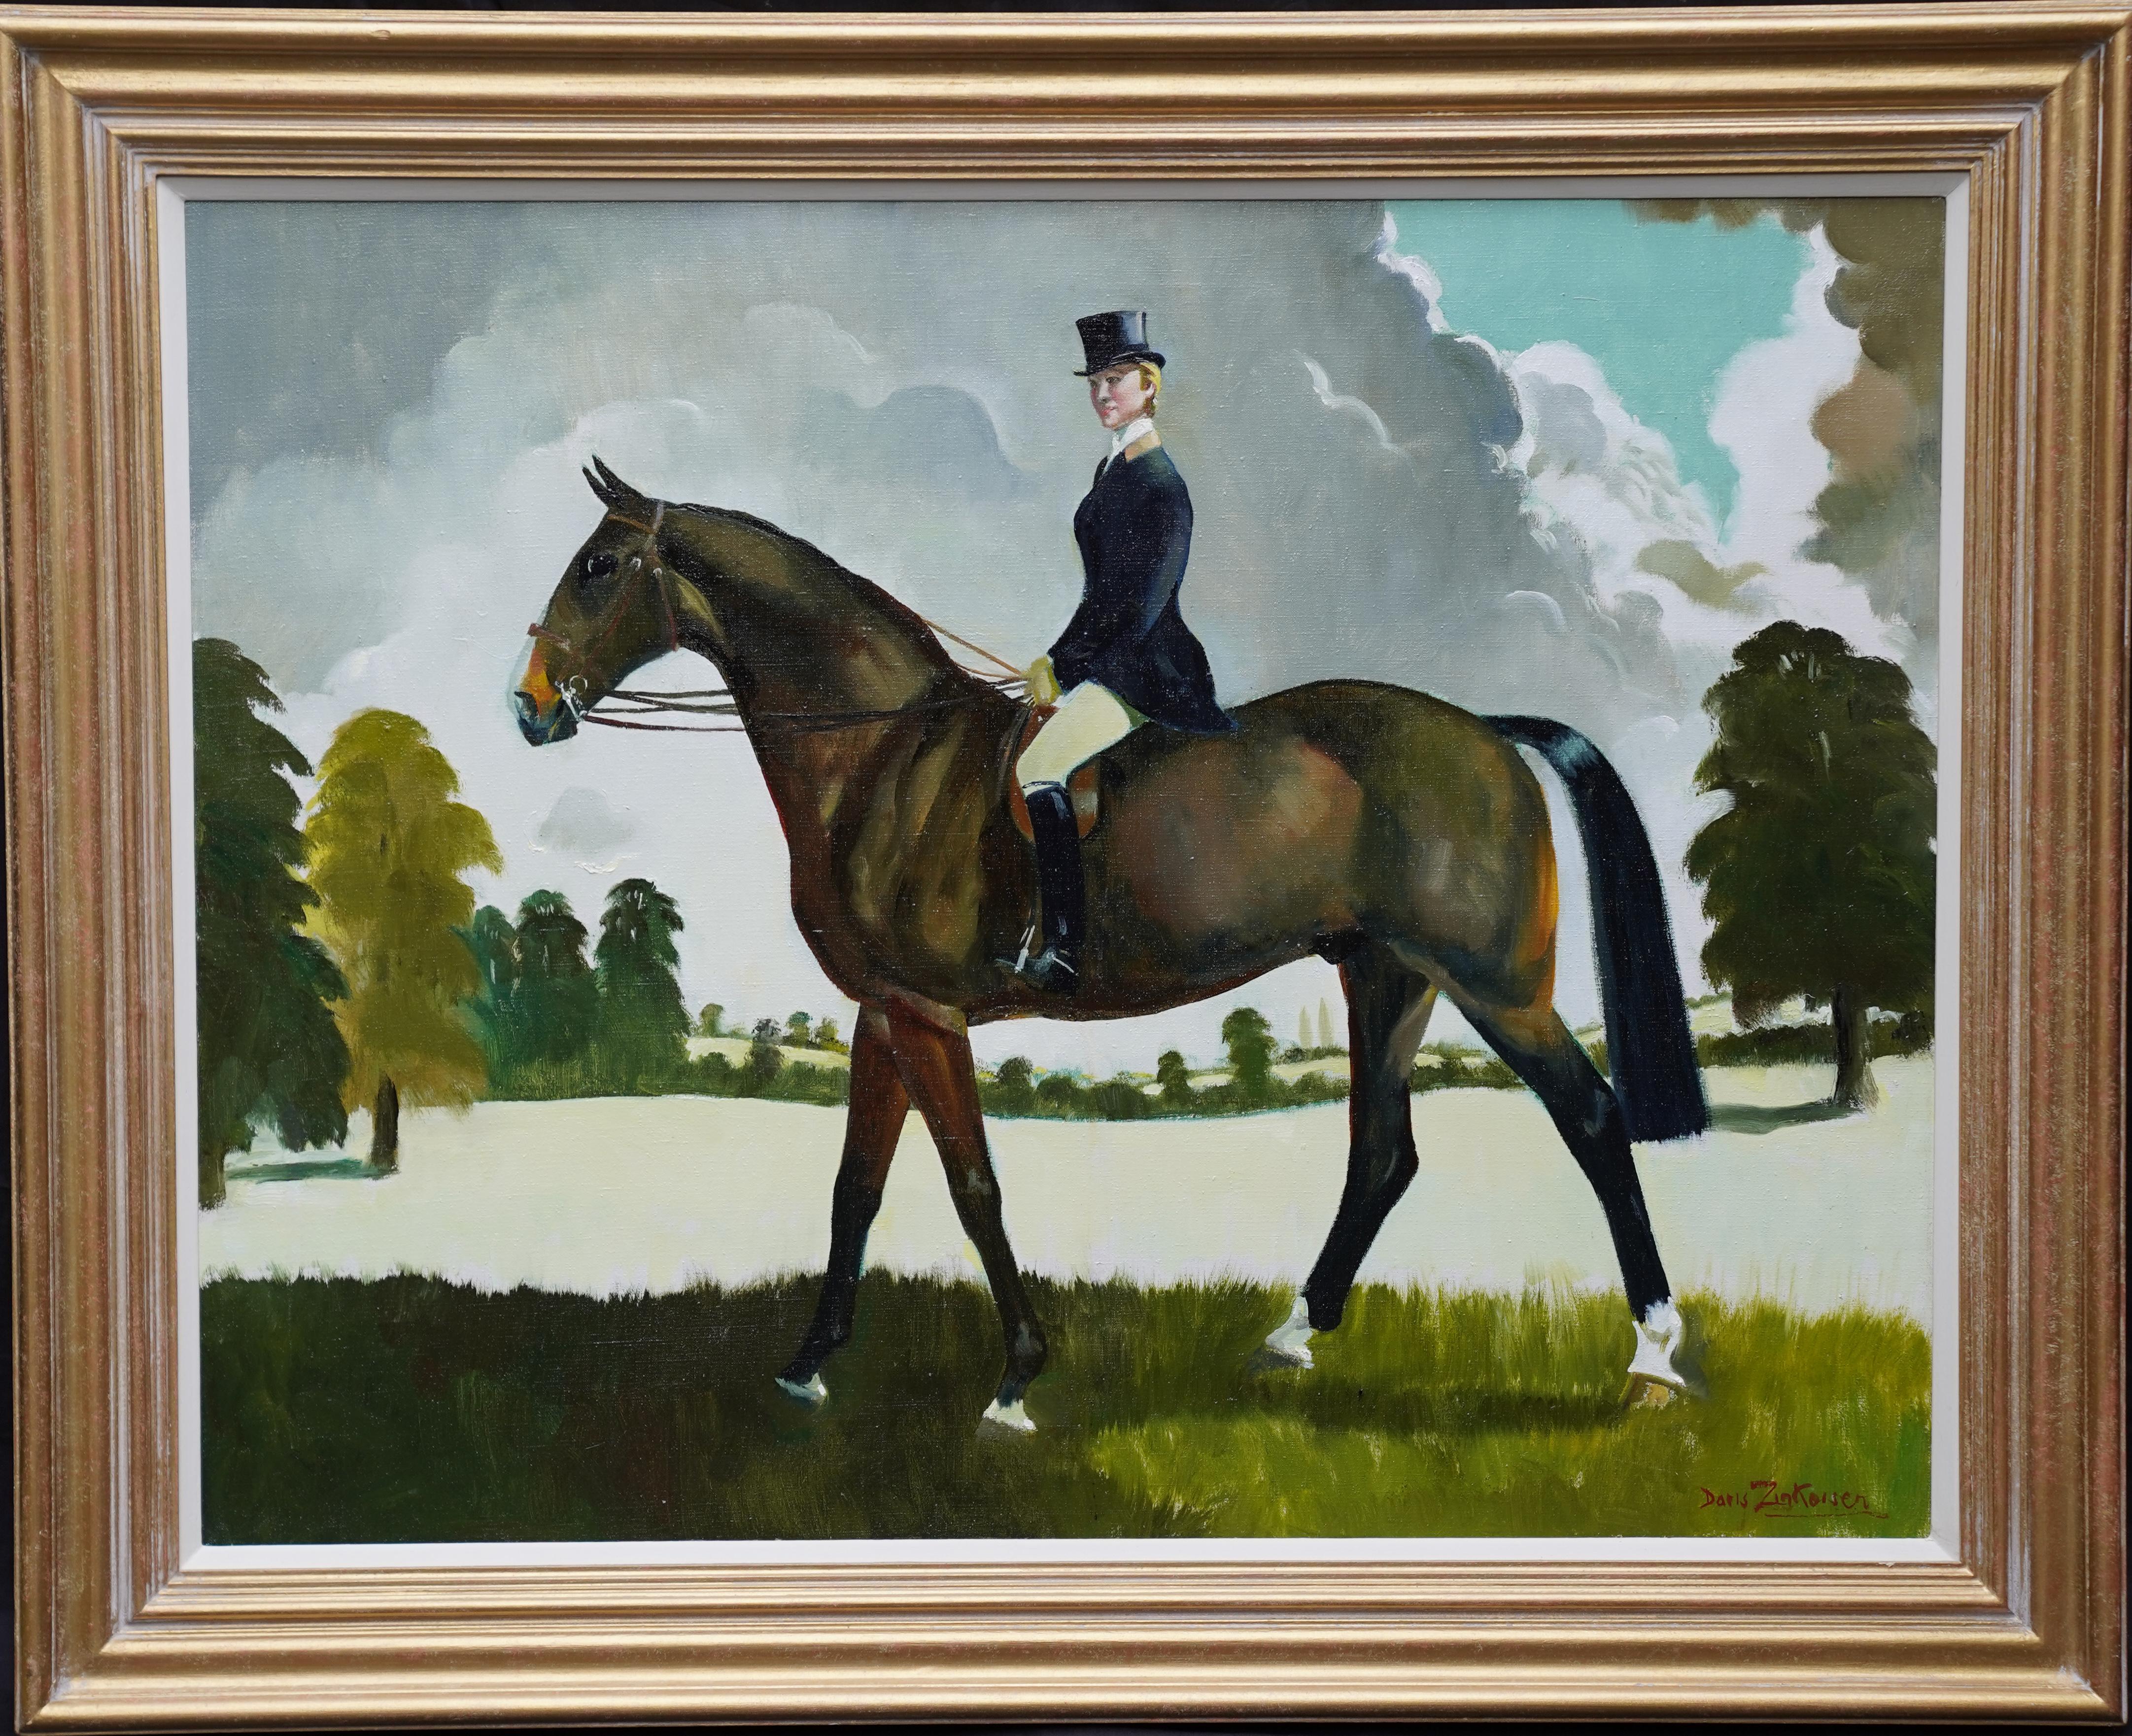 Doris Zinkeisen Animal Painting - Miss Moggy Hennesey on her Hunter - Scottish 60s art horse portrait oil painting